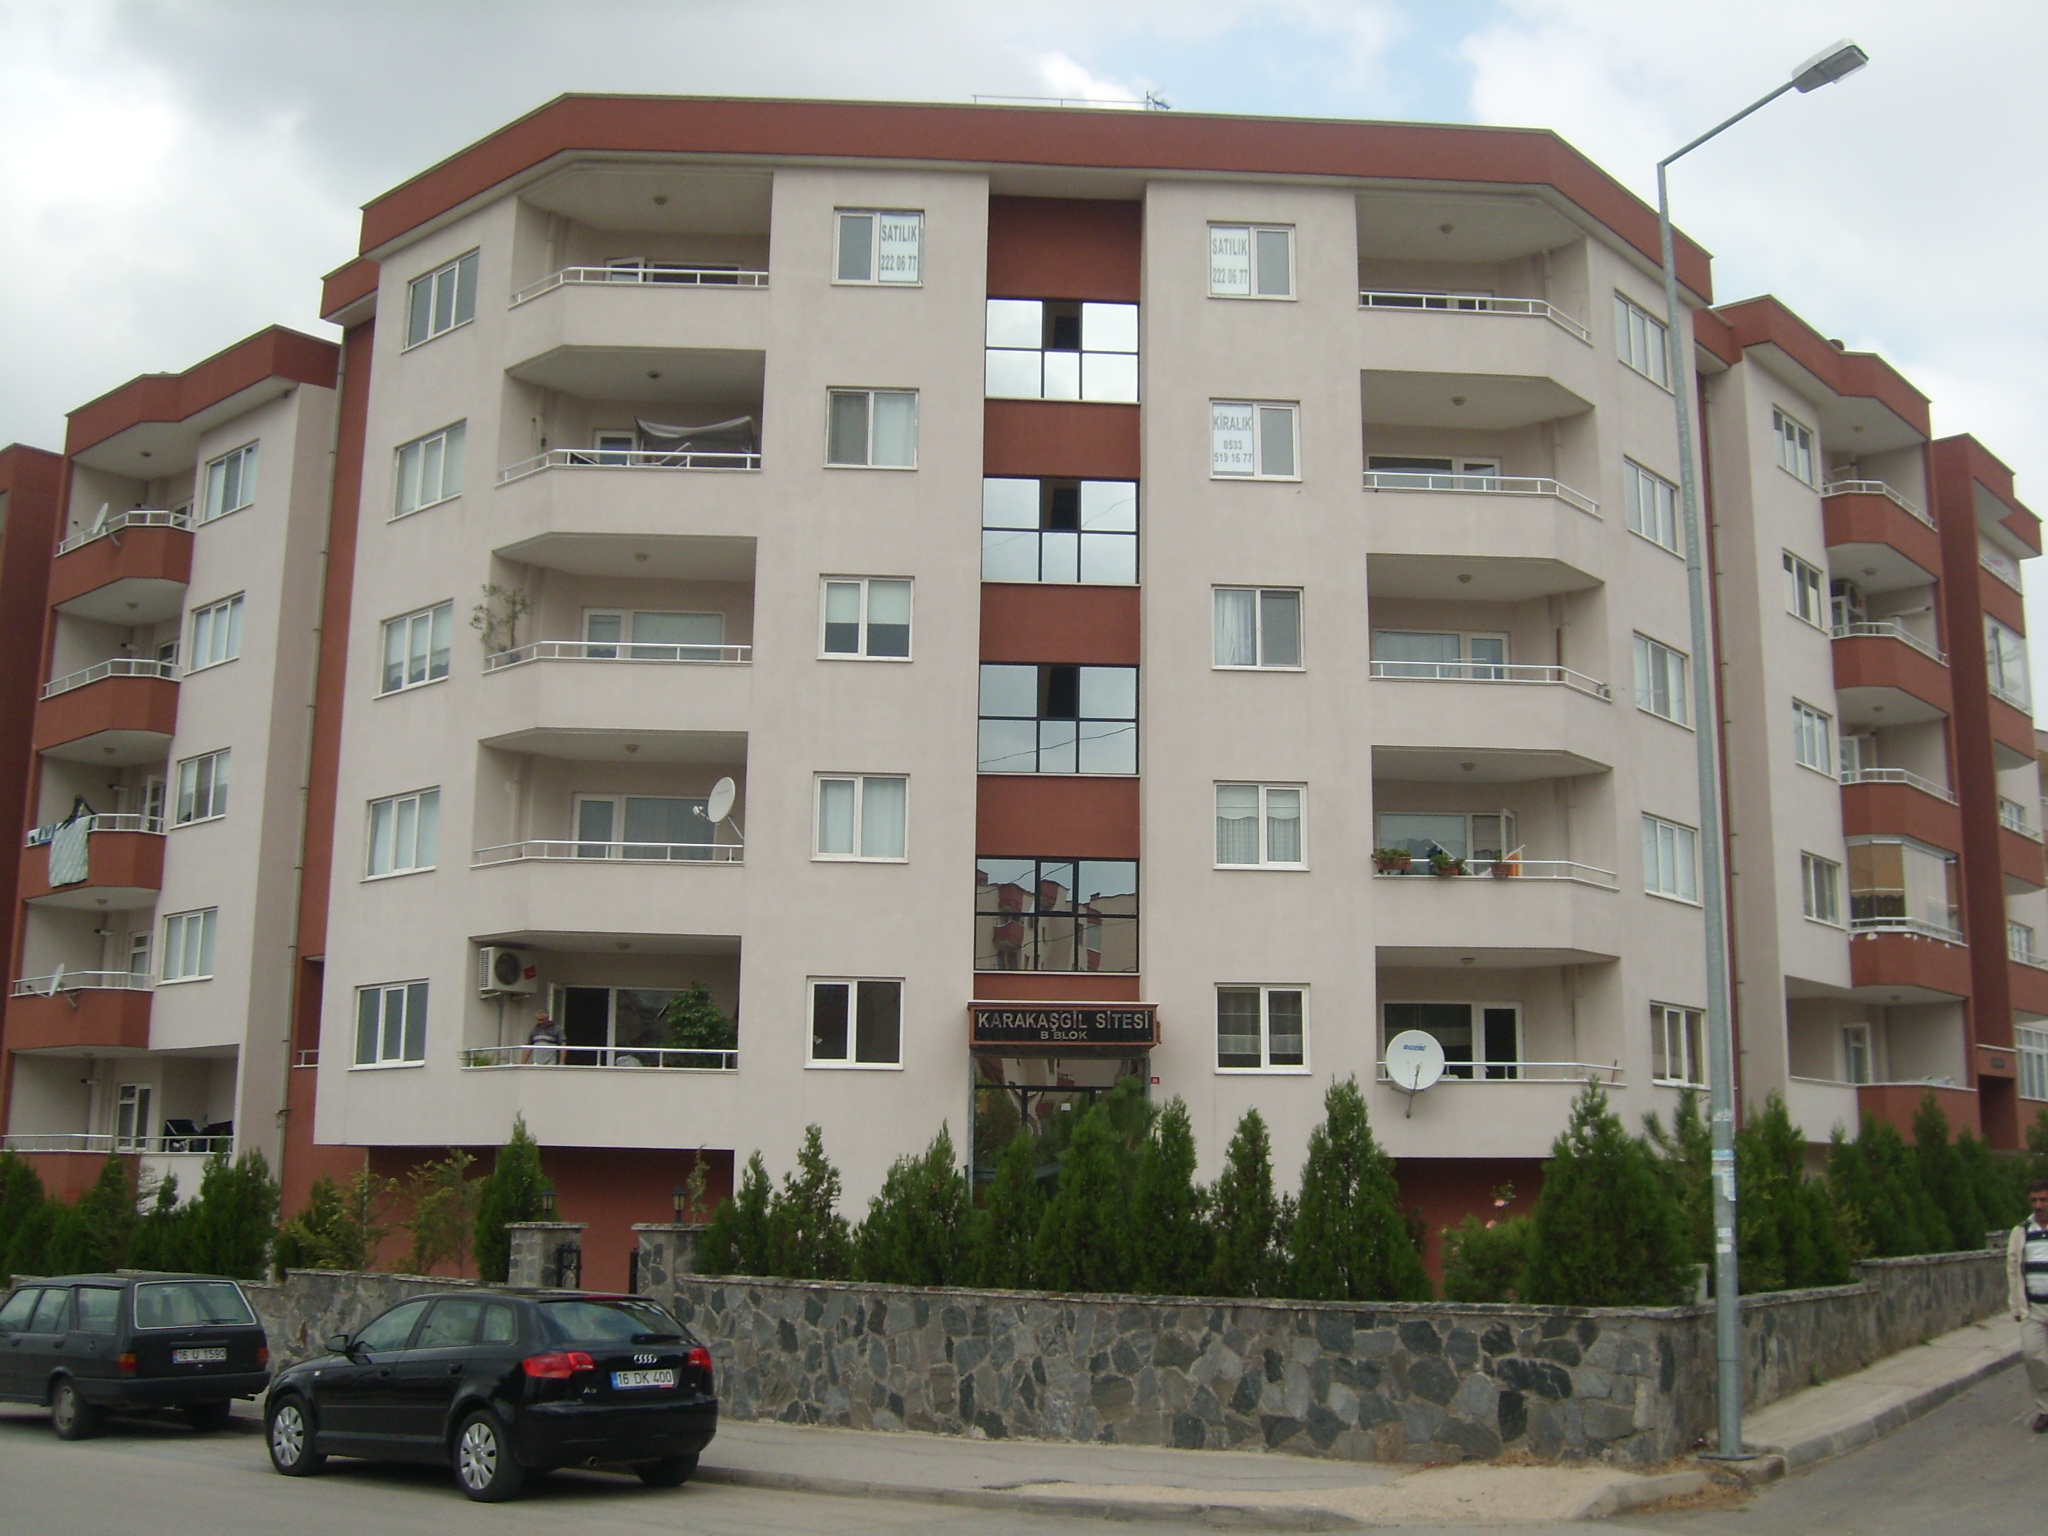 30 Flats Housing Project at Ataevler